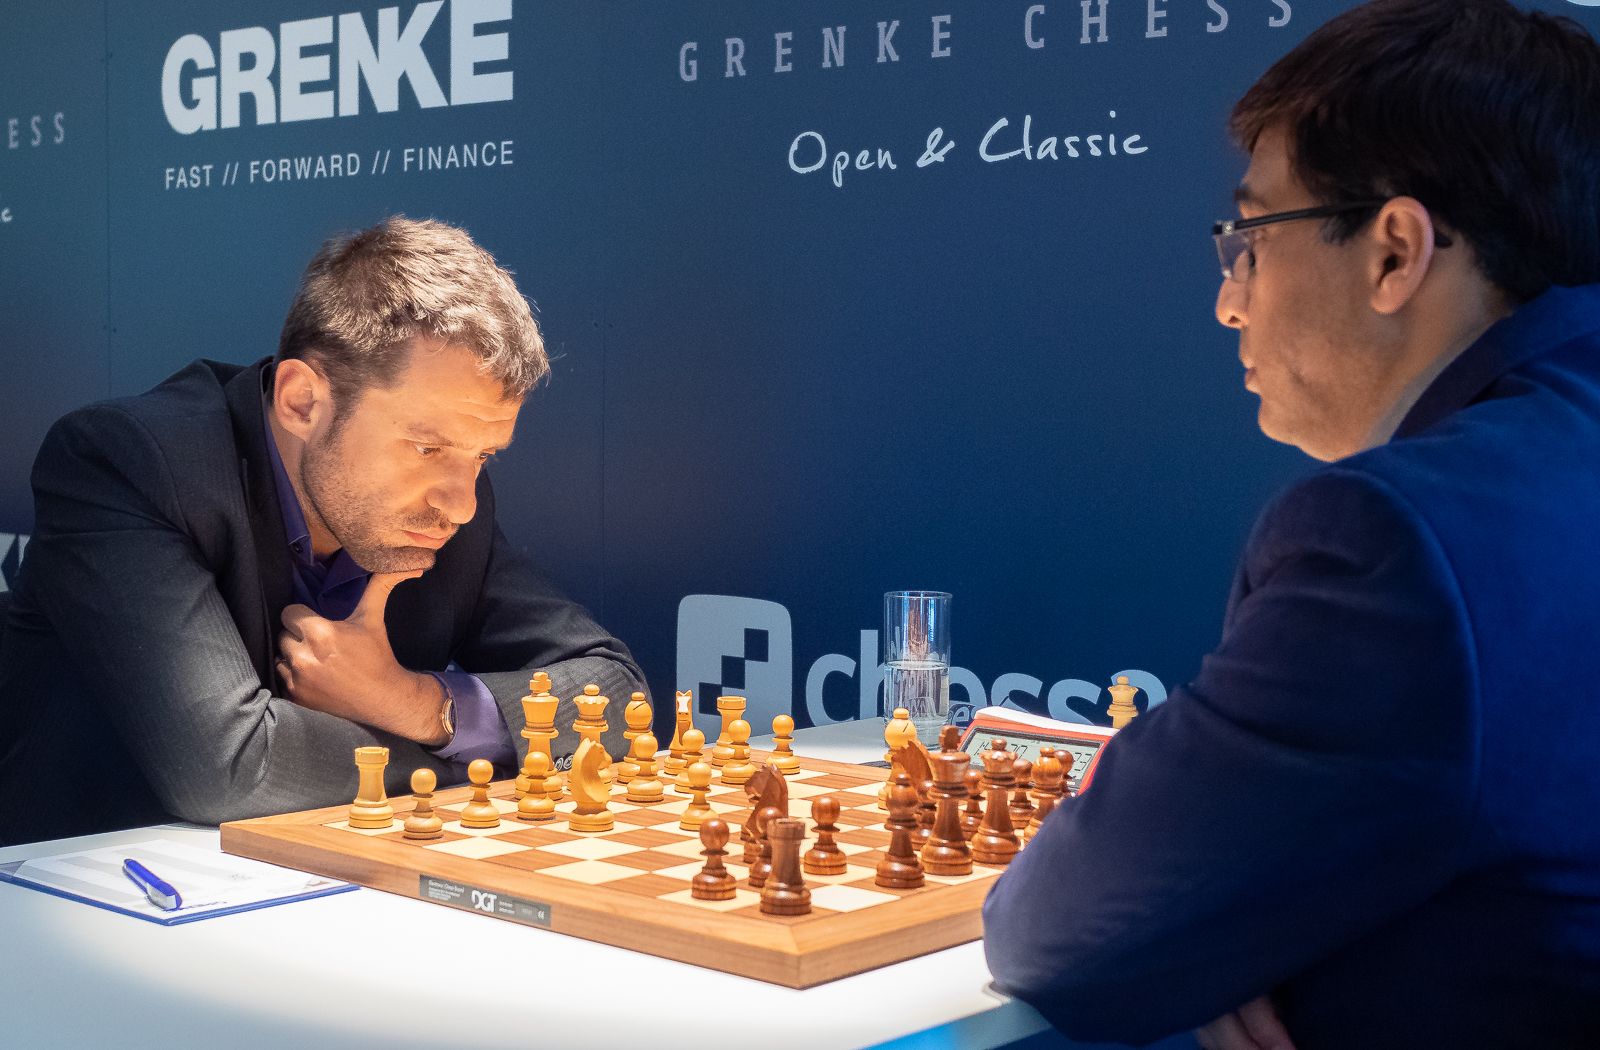 Keymer Fights, Loses Marathon Game To Carlsen As Grenke Chess